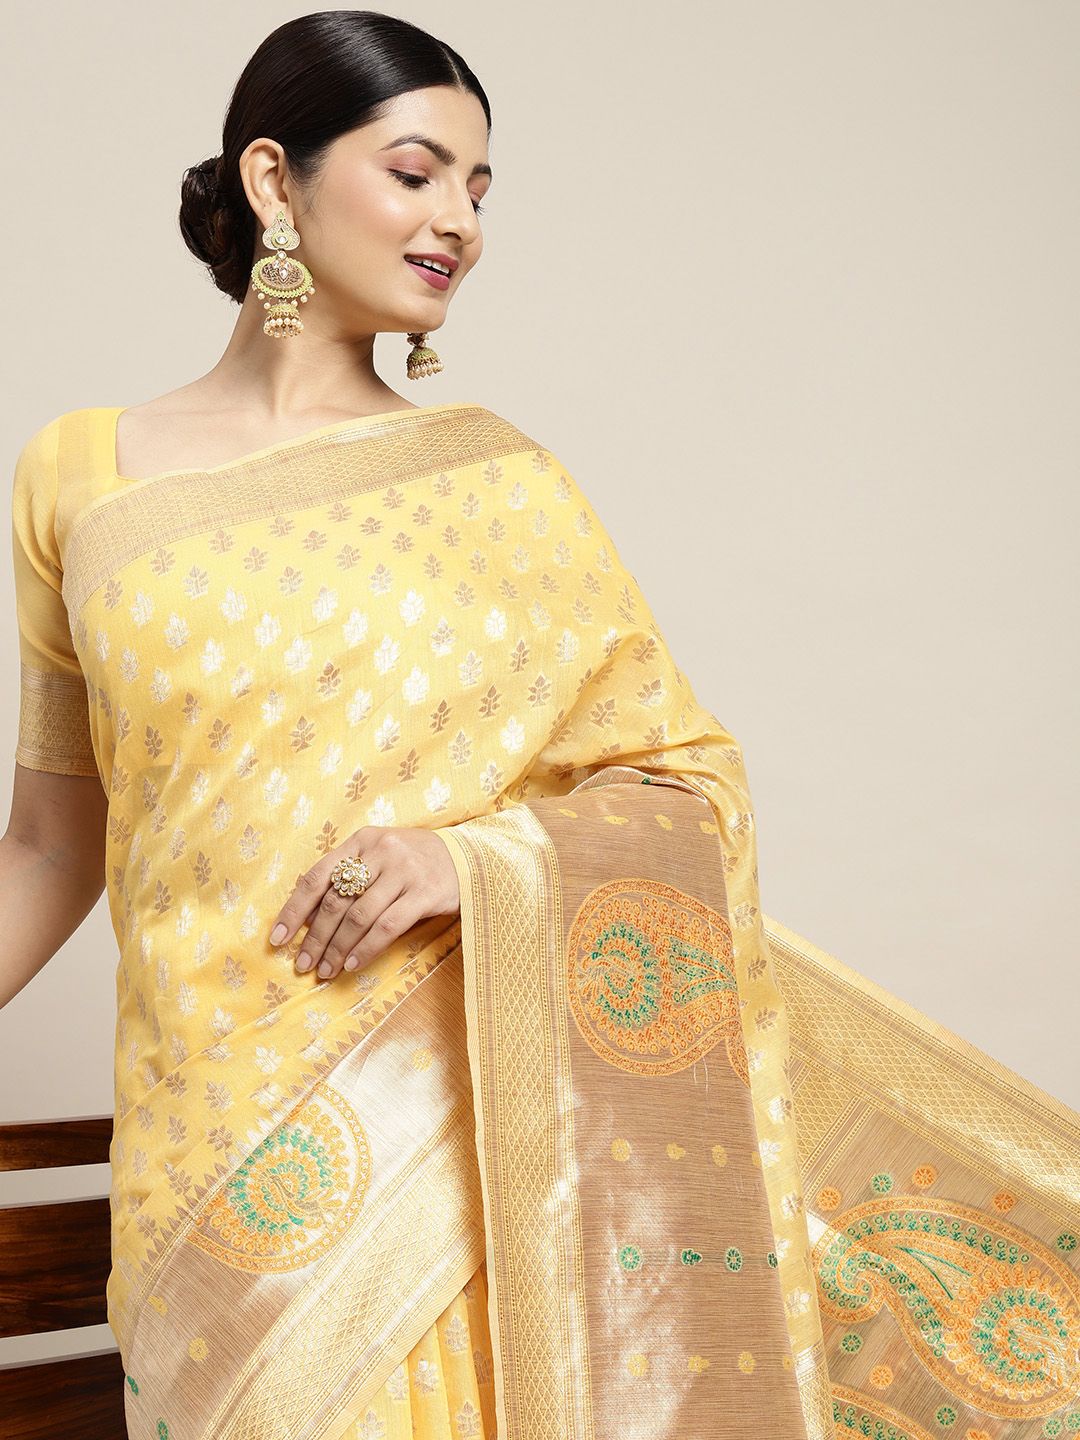 Saree mall Yellow & Golden Silk Cotton Woven Design Banarasi Saree Price in India